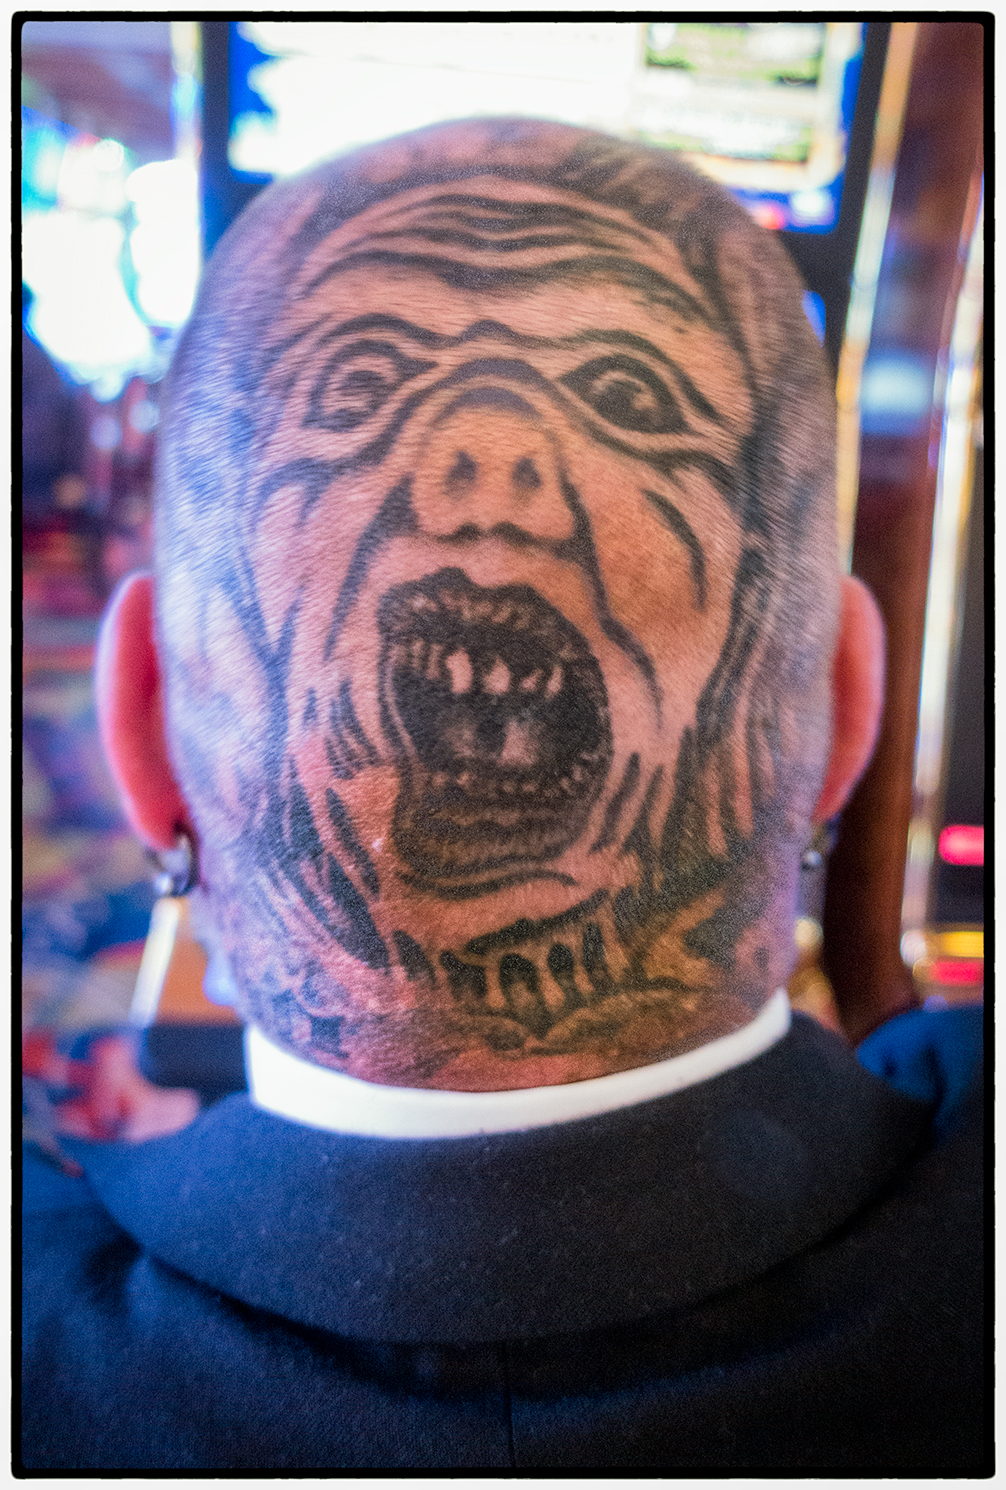 Tattooed Man, Biloxi, Mississippi